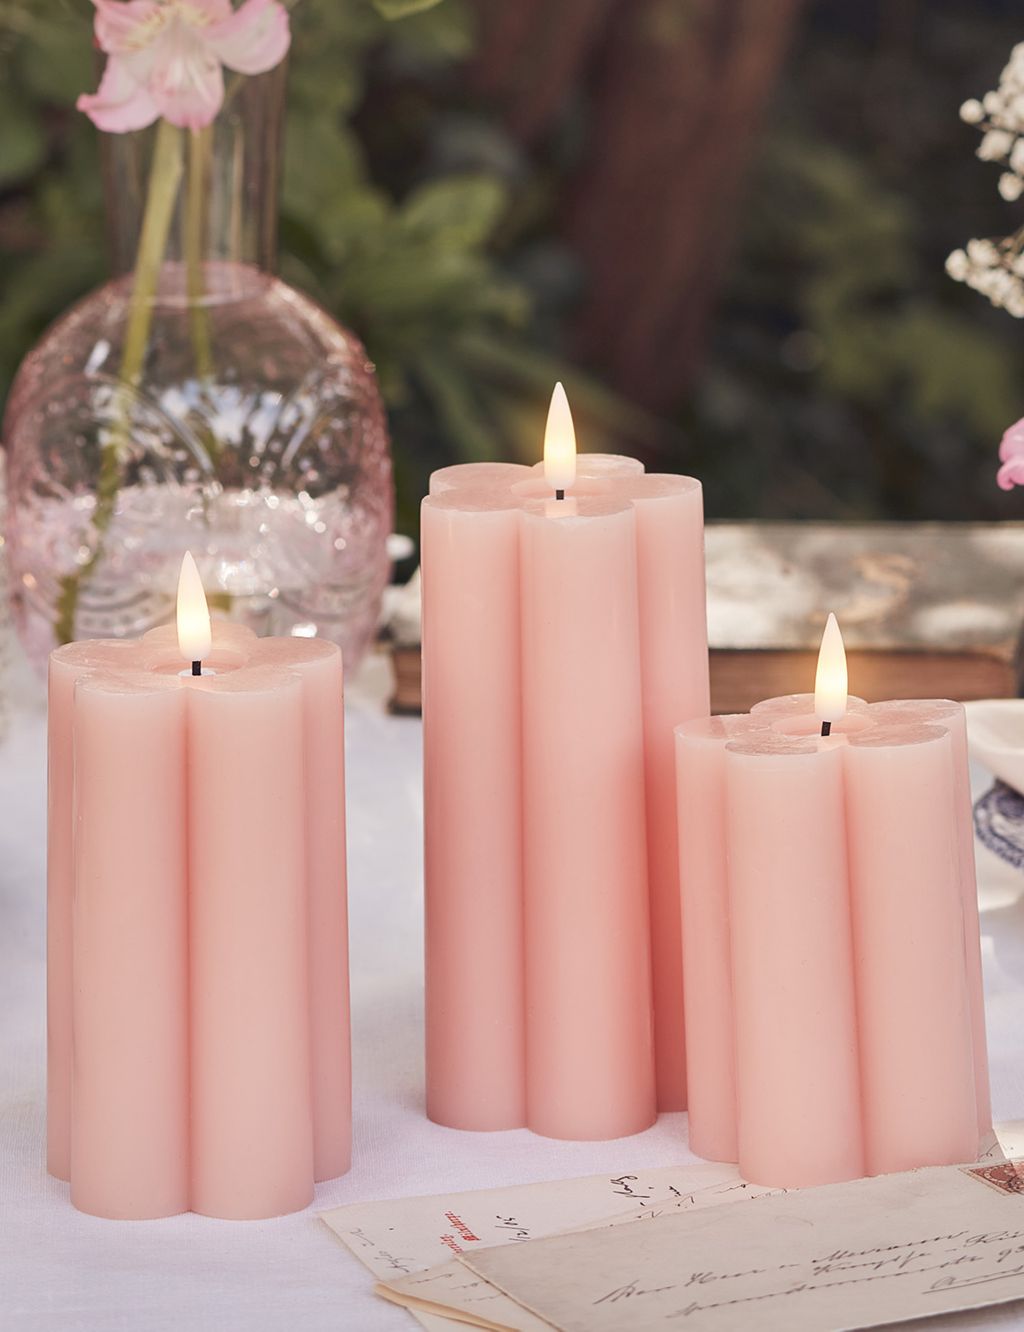 Set of 3 Wax Flower Light Up Candles